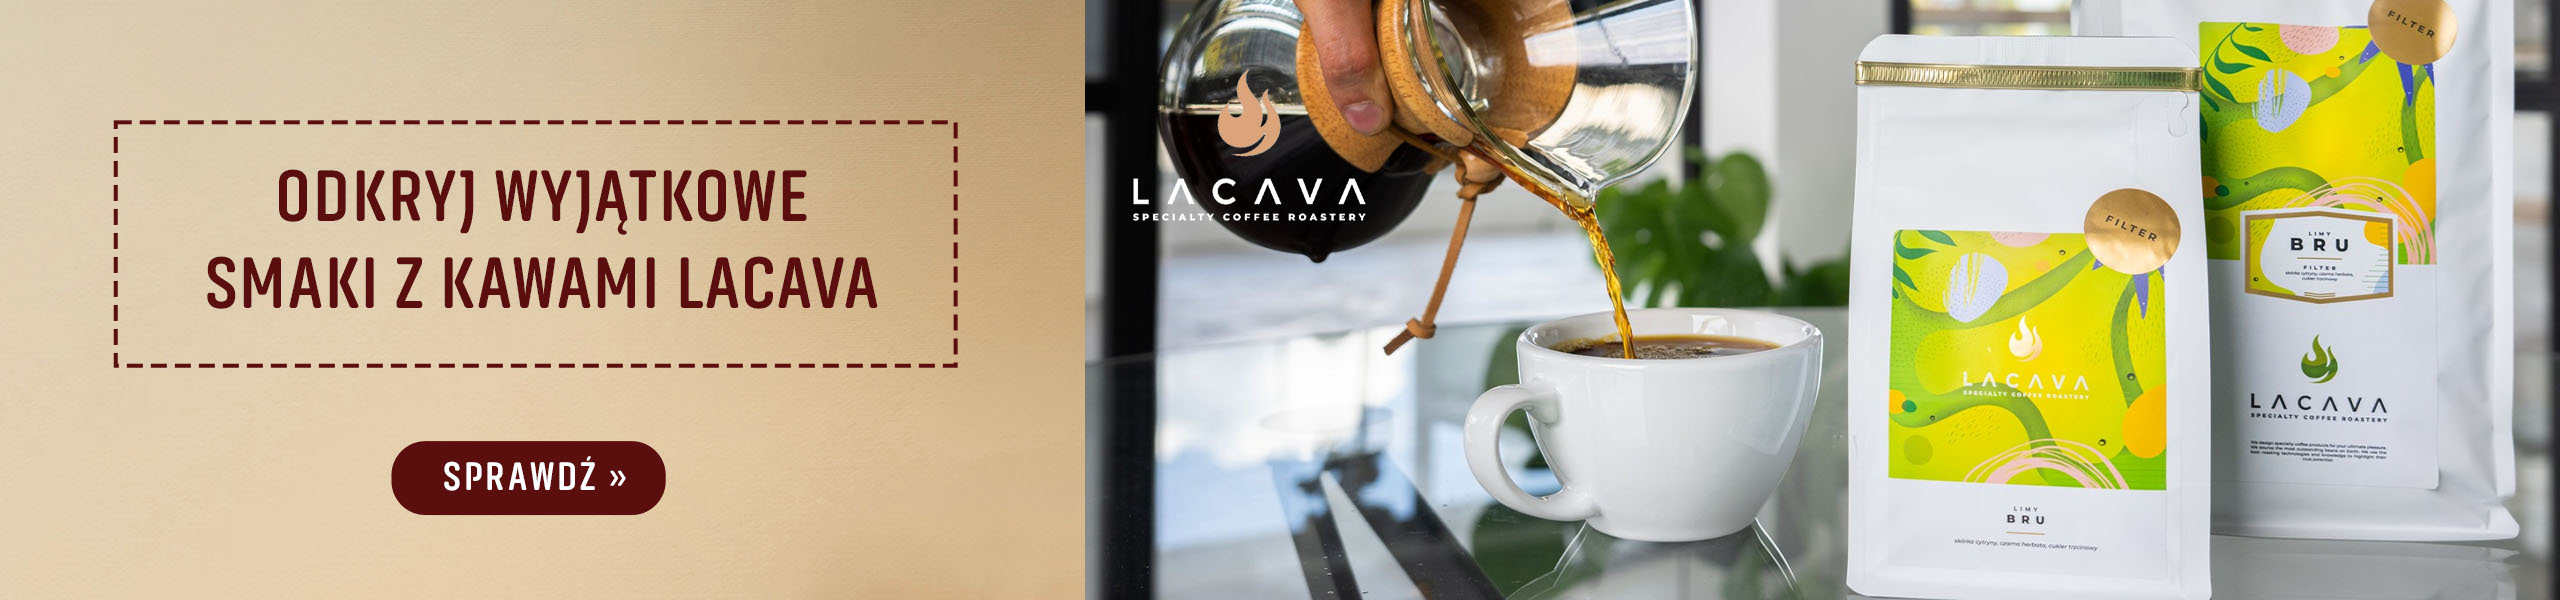 Palarnia kawy Lacava